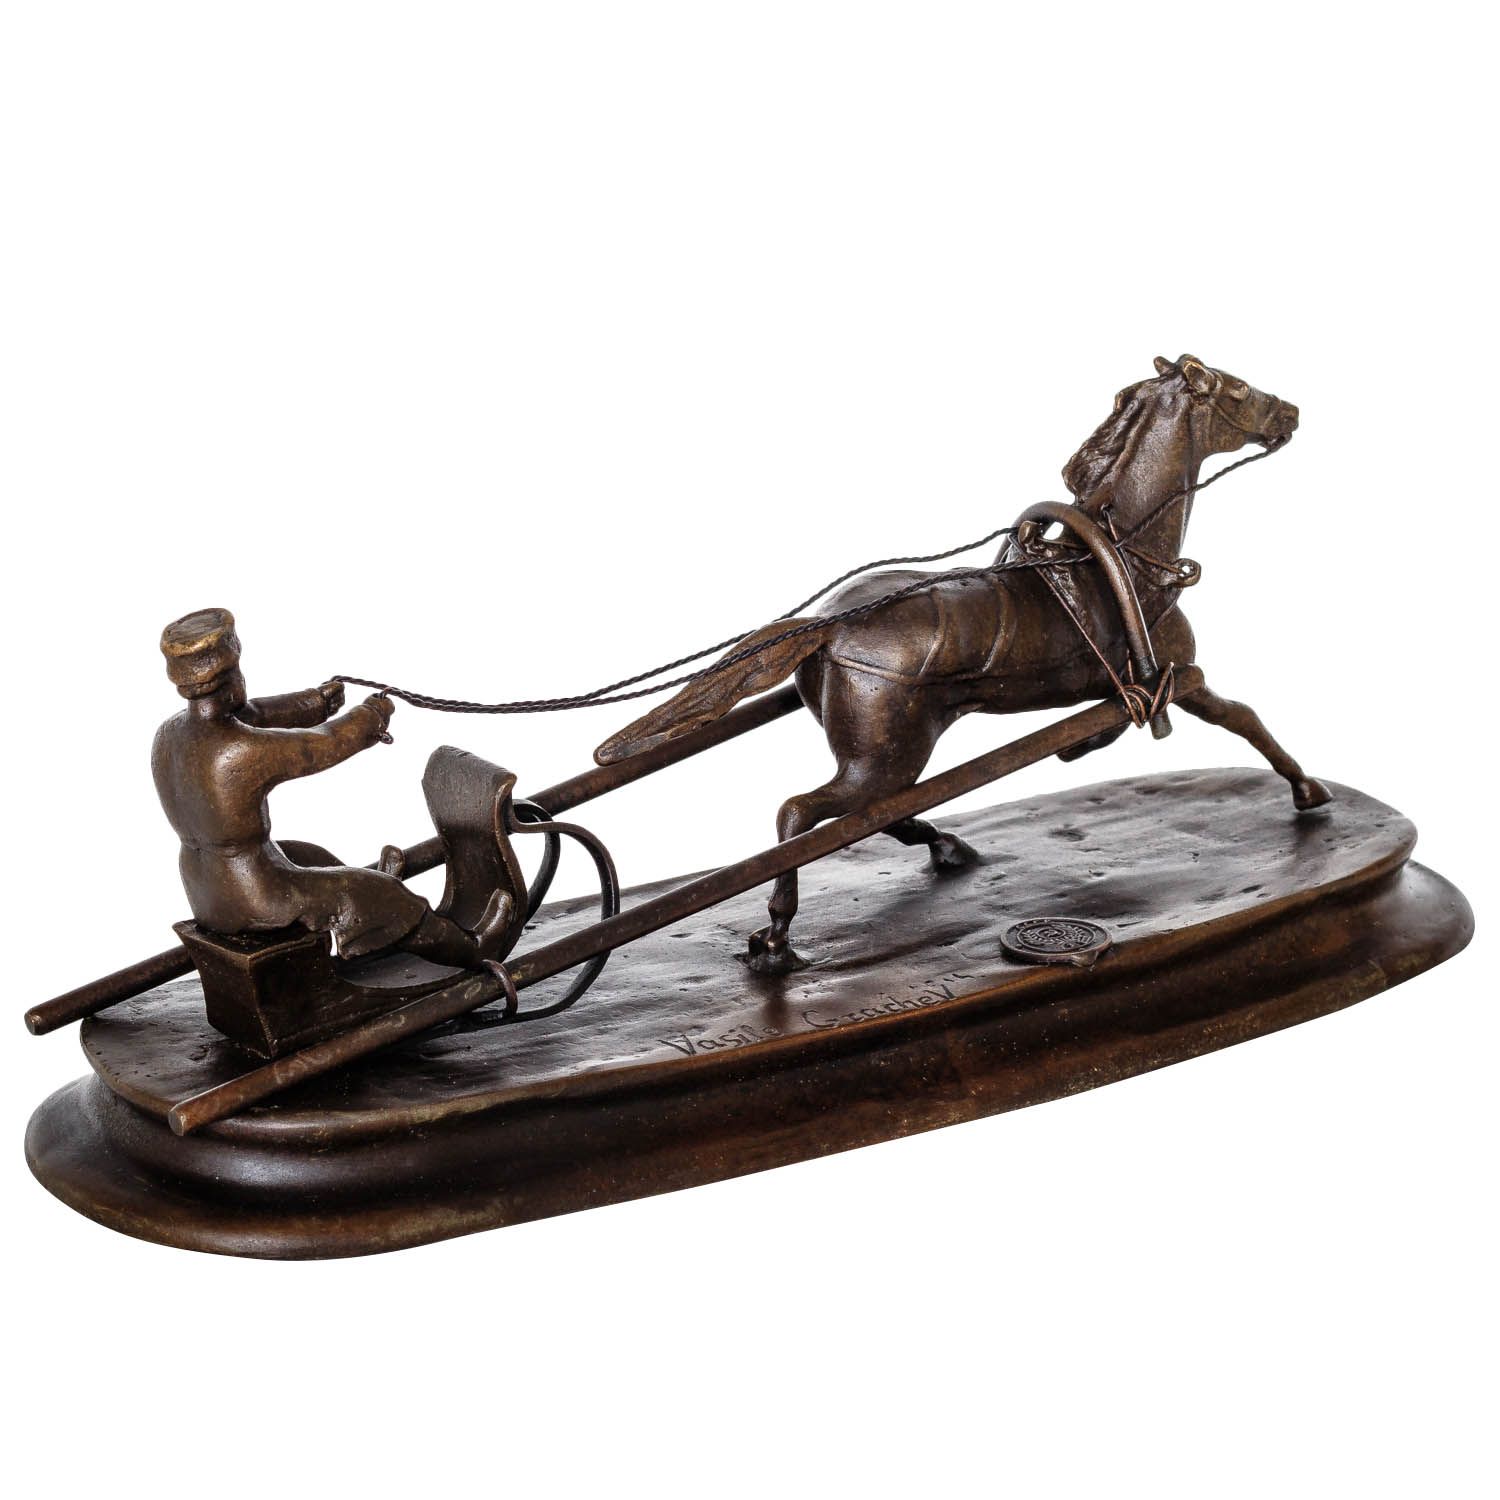 Bronzeskulptur nach Grachev Pferd Schlitten Antik-Stil Bronze Figur 25cm Replika 